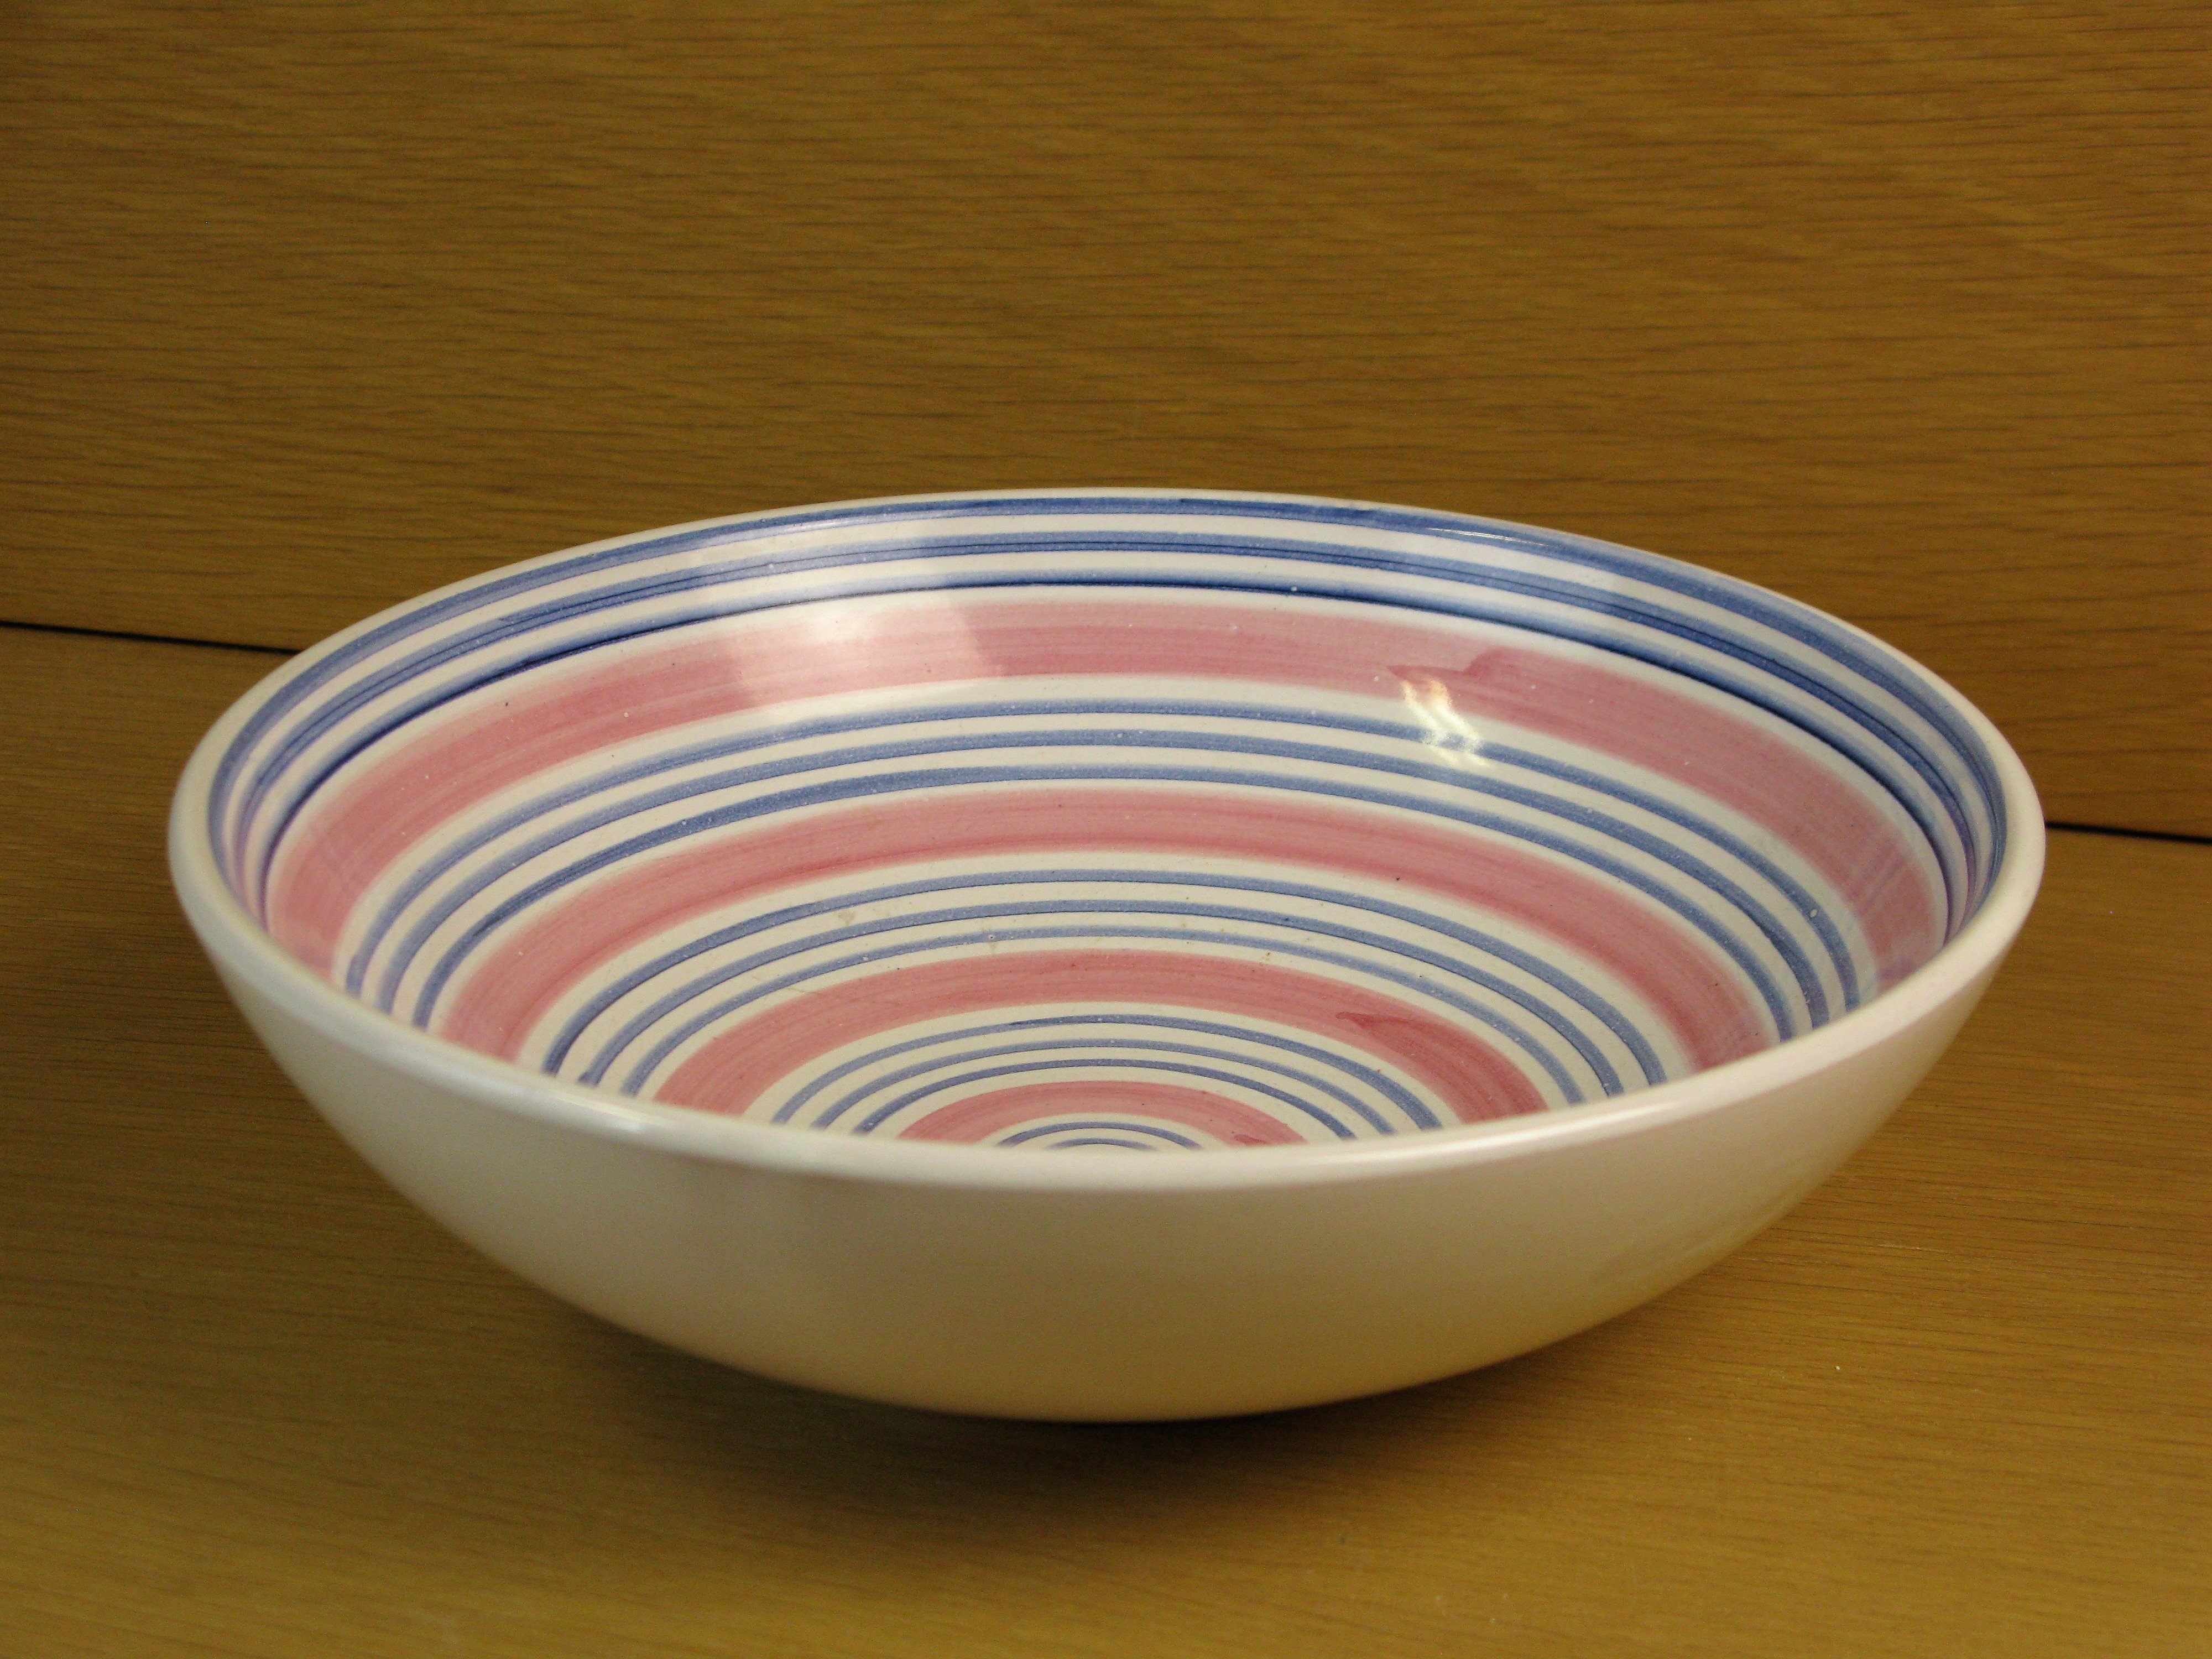 tricolor bowl 317